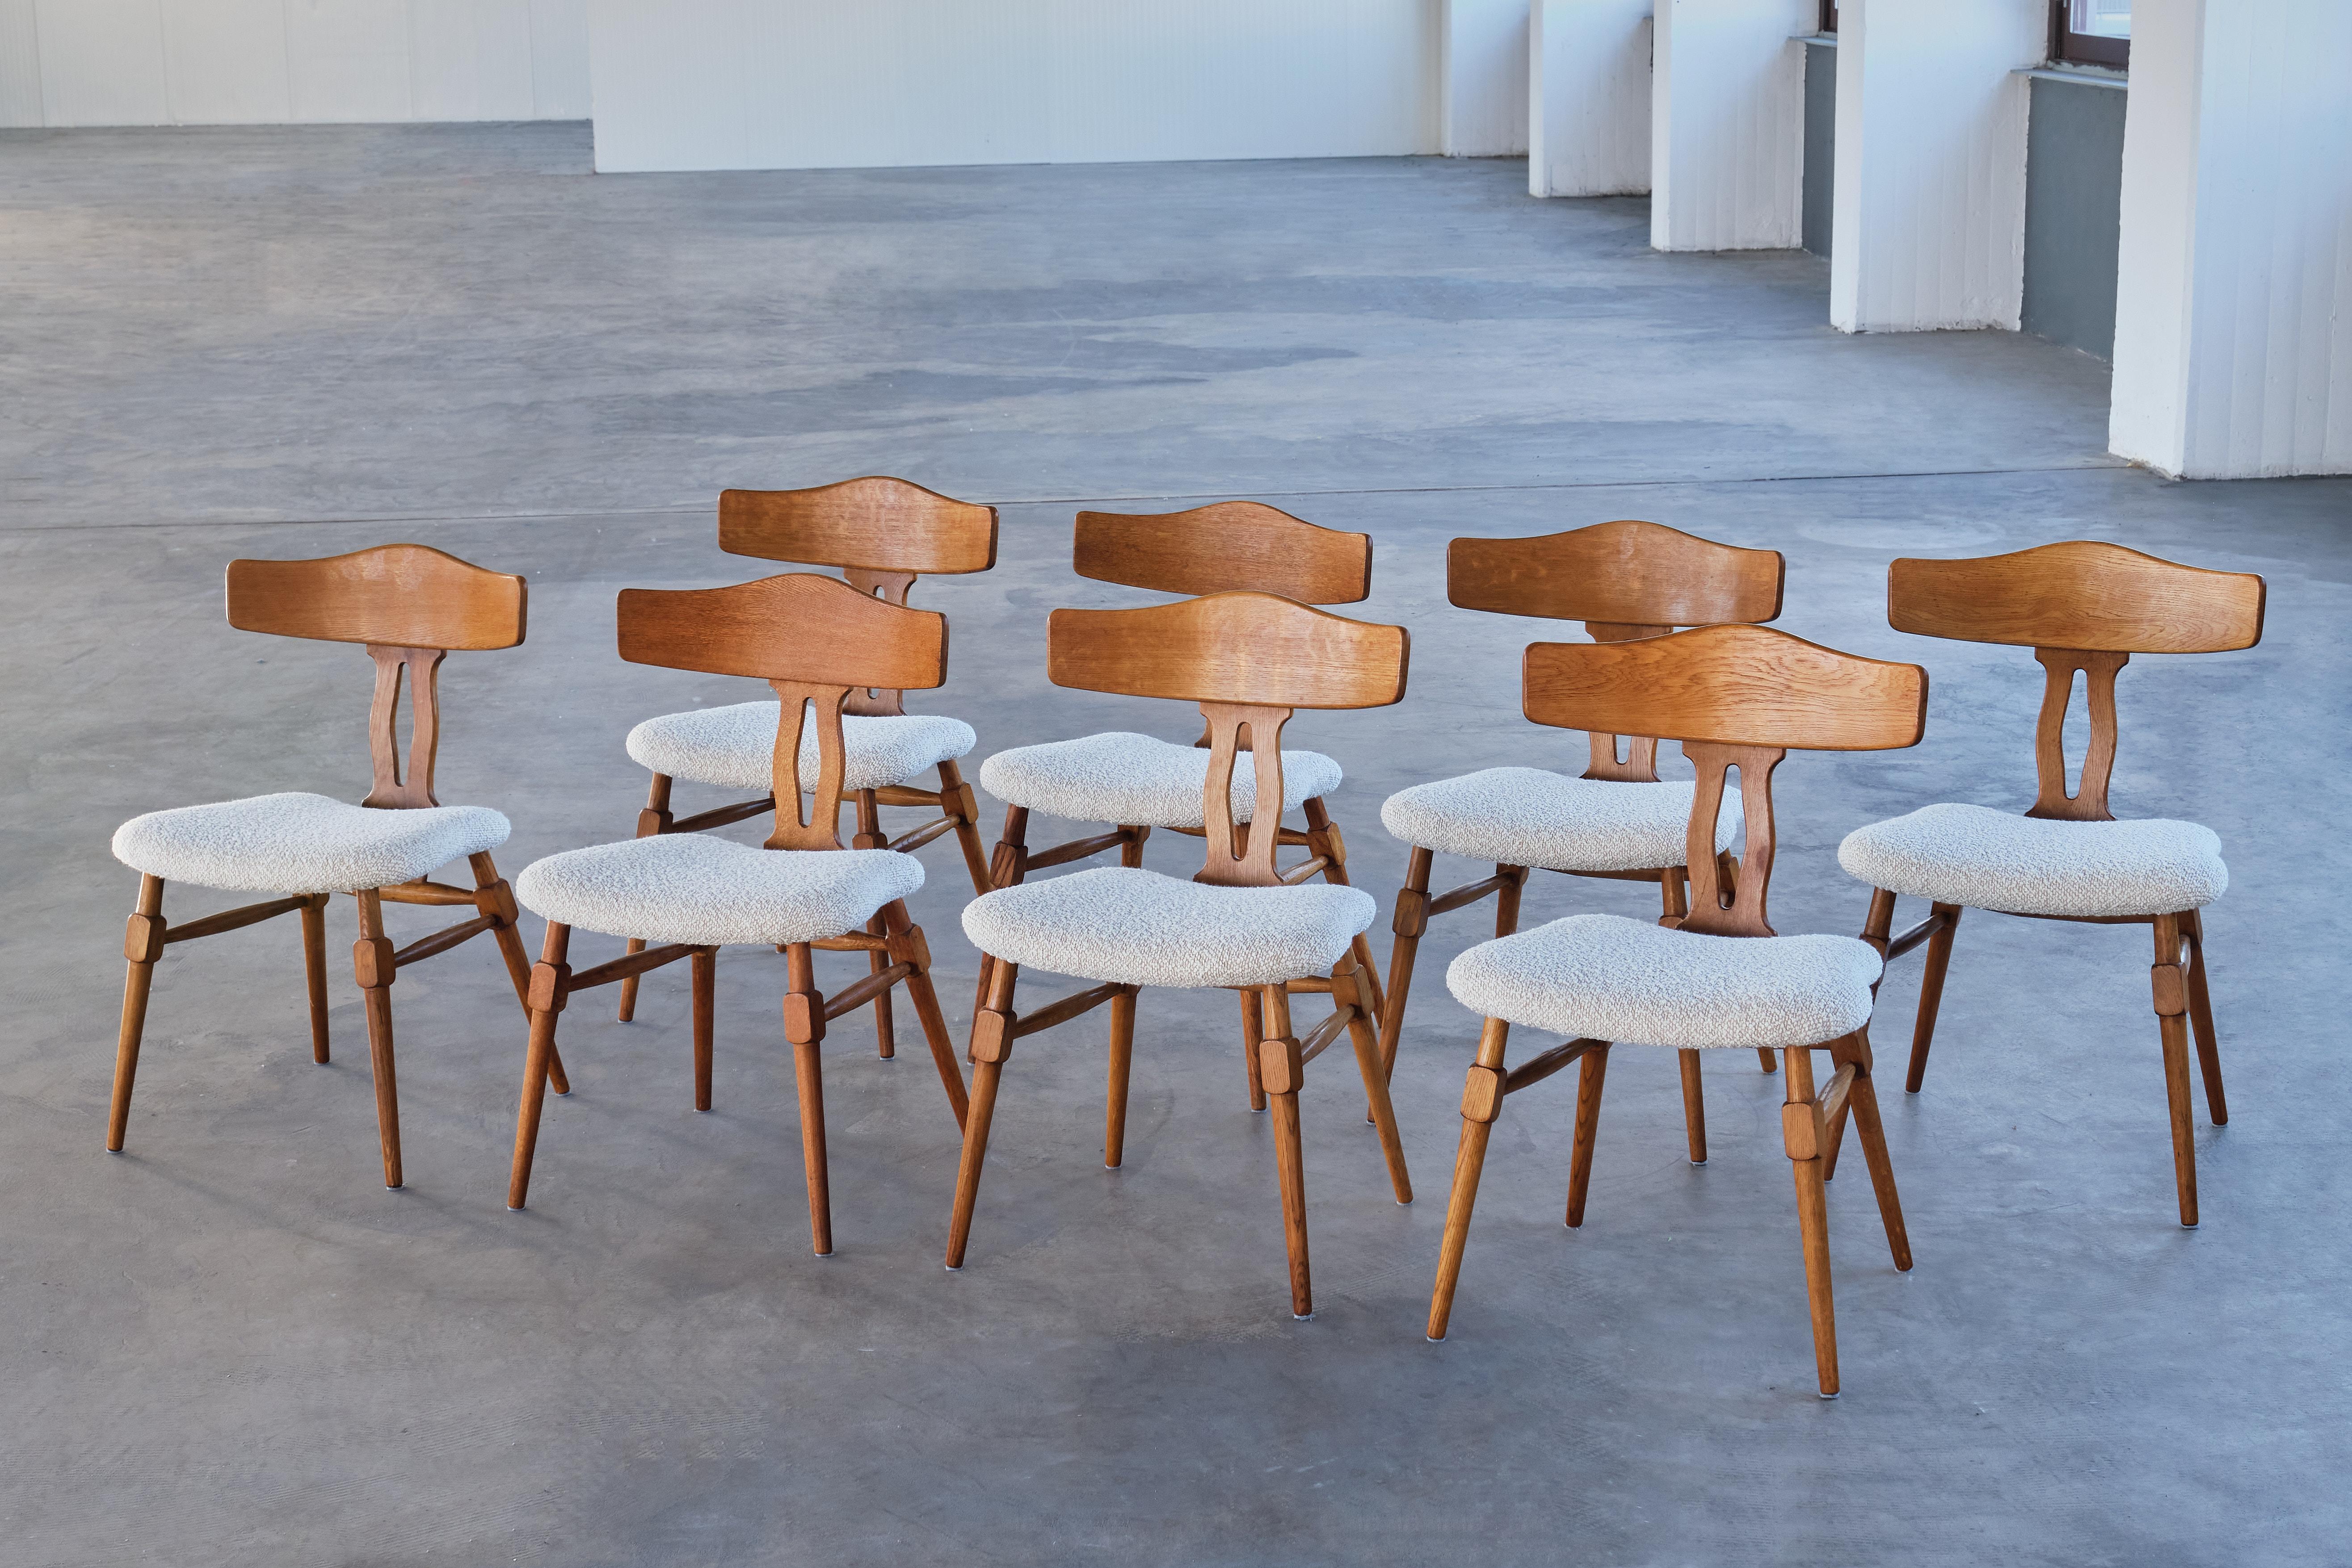 Ce rare ensemble de chaises de salle à manger a été conçu par Henning (Henry) Kjærnulf à la fin des années 1950. Les chaises ont été fabriquées par Nyrup Møbelfabrik au Danemark.  

L'ensemble se compose de huit chaises en chêne massif dont le grain